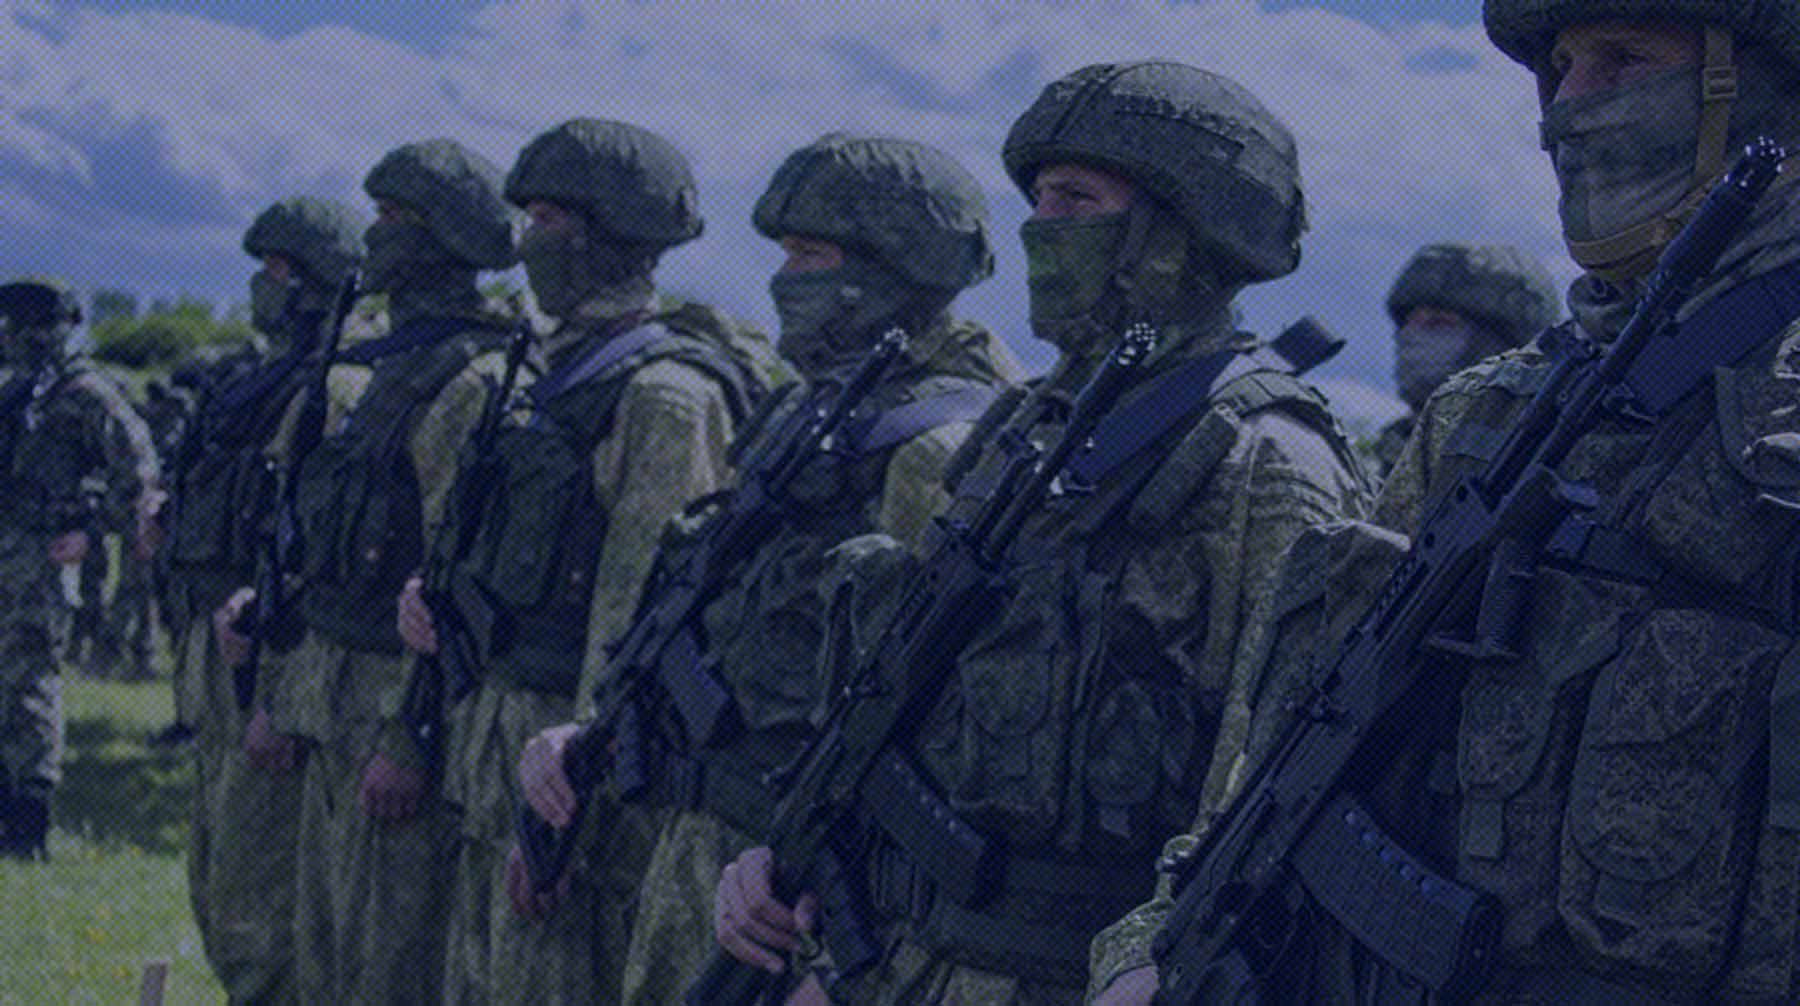 3825 солдат и офицеров получили ранения, уточнили в Минобороны РФ Фото: Global Look Press / Министерство обороны РФ